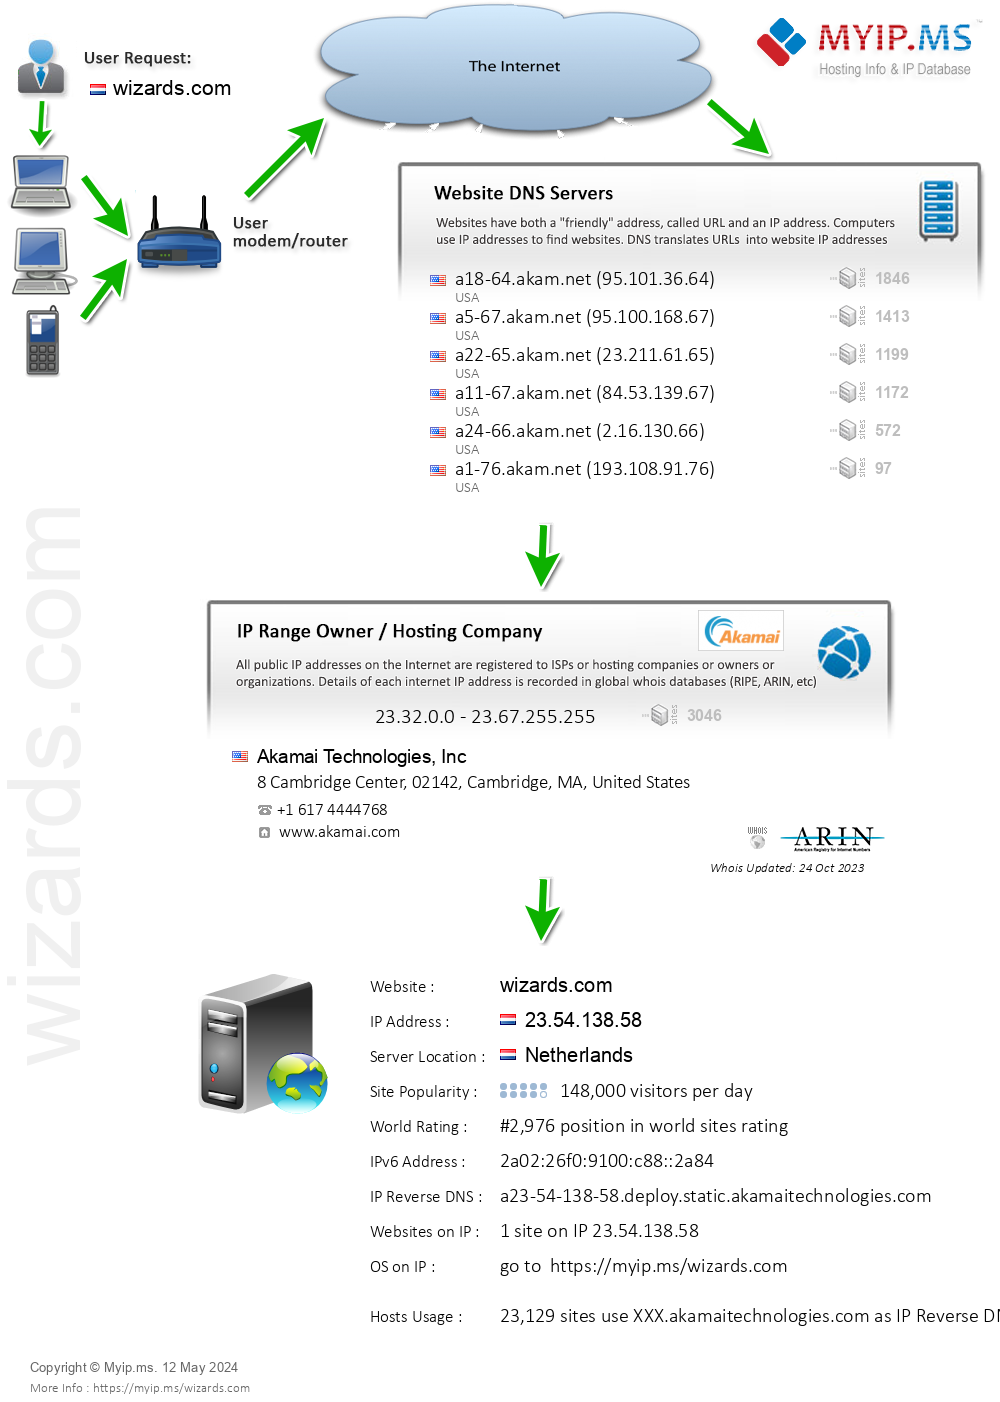 Wizards.com - Website Hosting Visual IP Diagram